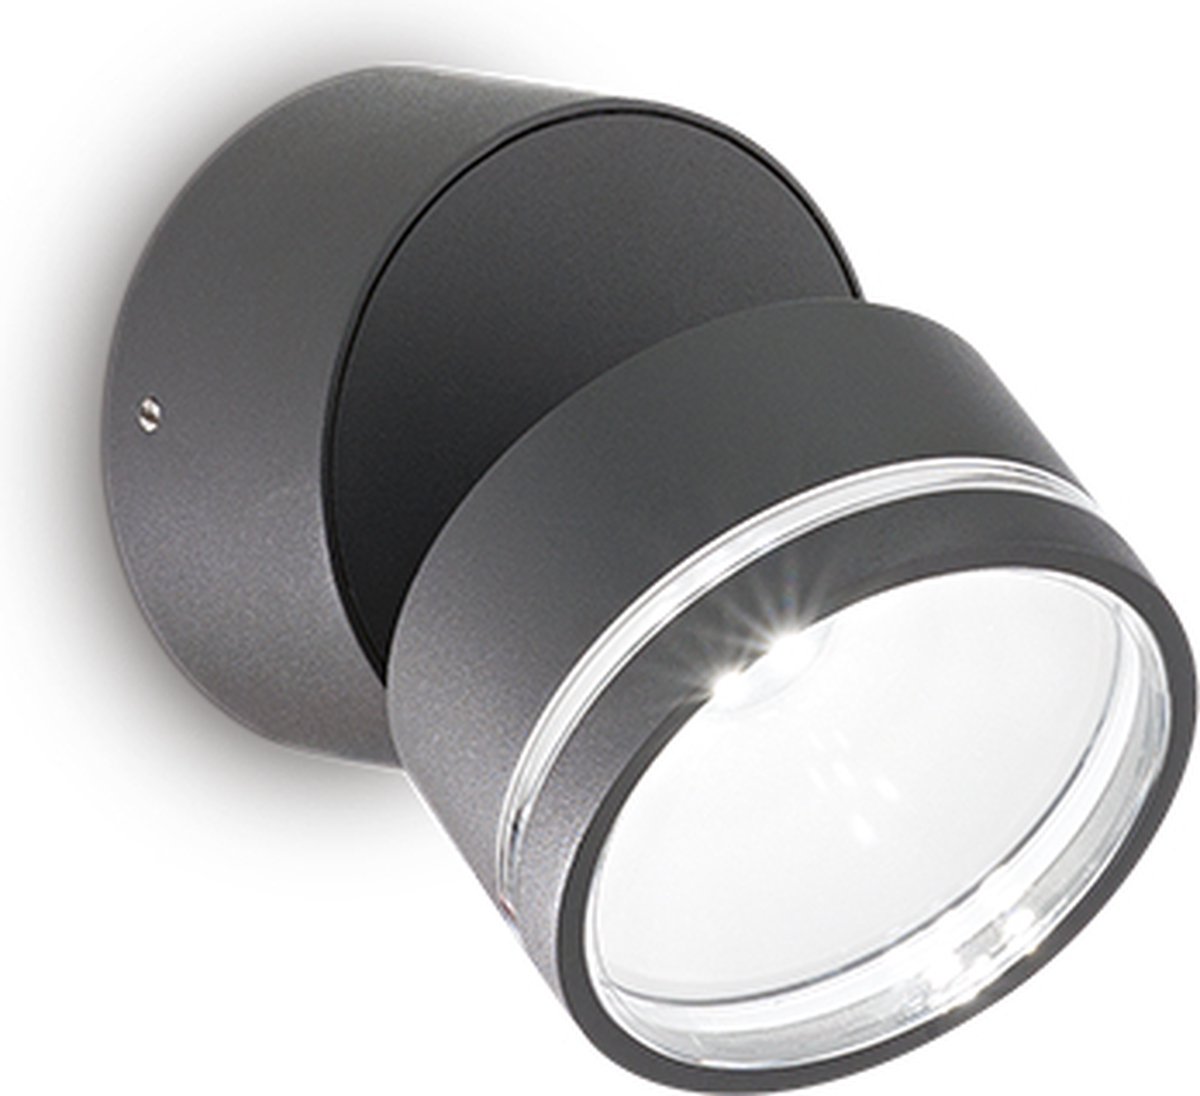 Ideal Lux - Omega round - Wandlamp - Metaal - LED - Grijs - Voor binnen - Lampen - Woonkamer - Eetkamer - Keuken